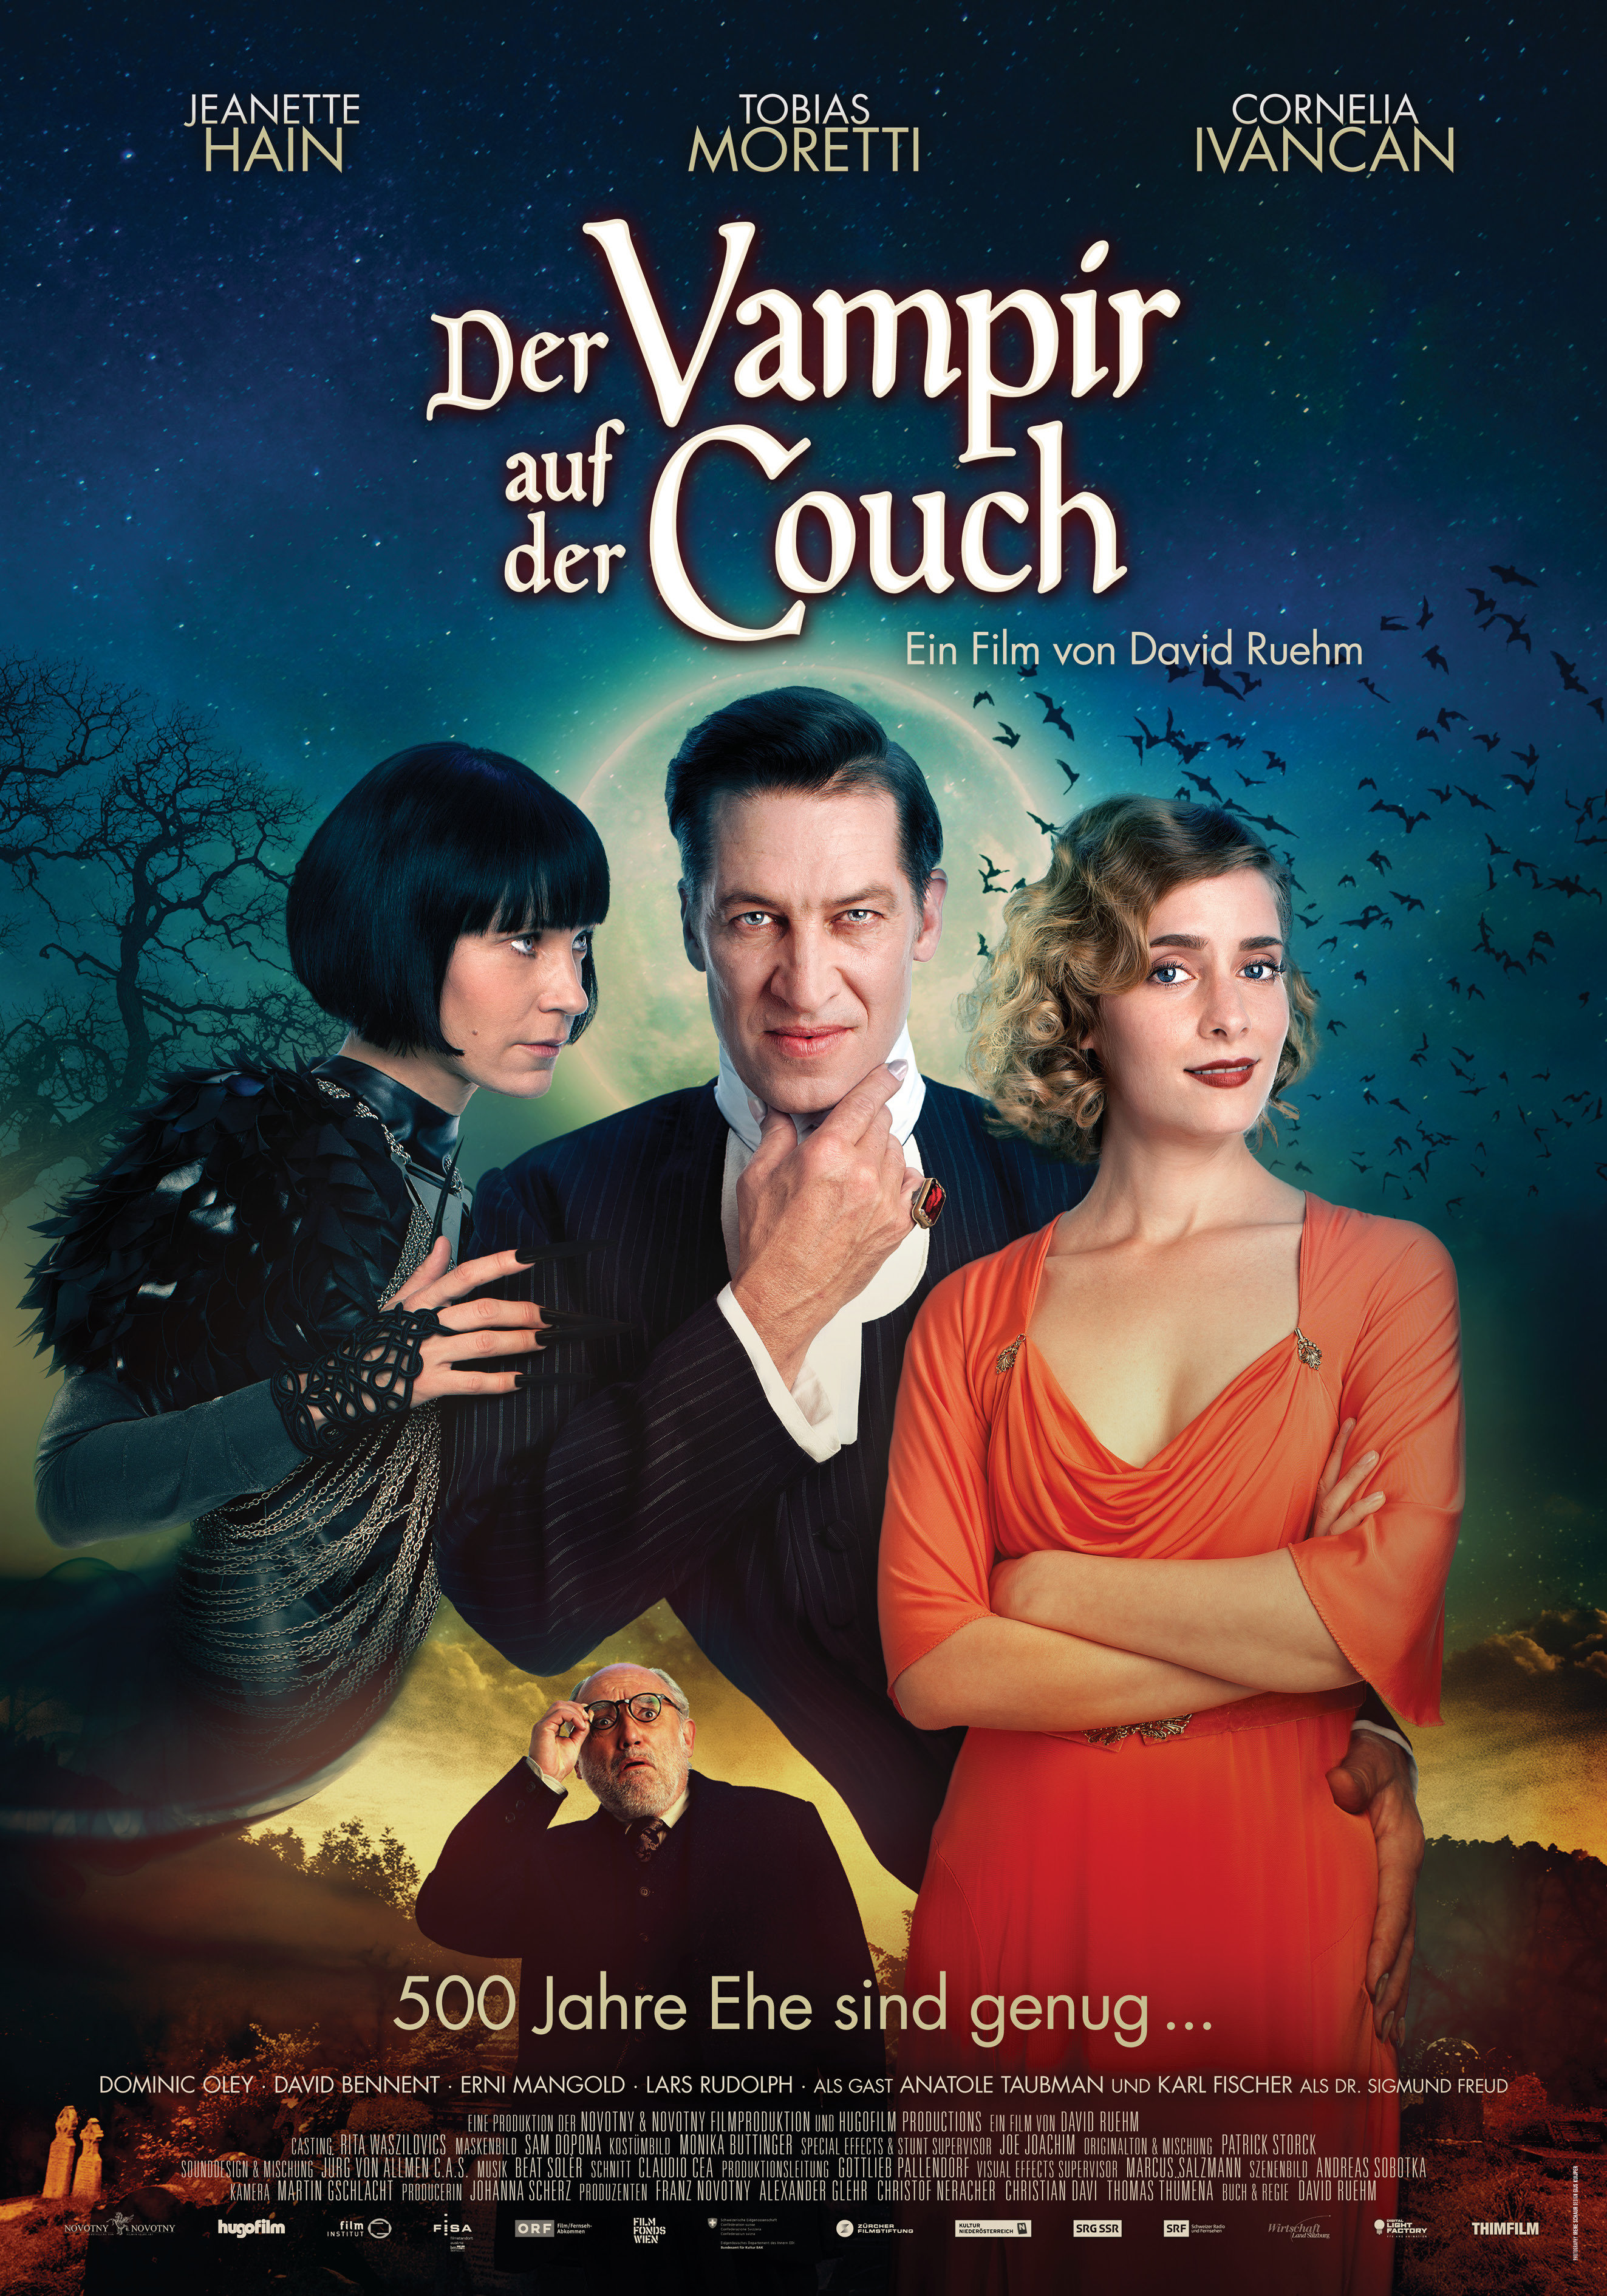 Karl Fischer, Jeanette Hain, Tobias Moretti and Cornelia Ivancan in Der Vampir auf der Couch (2014)